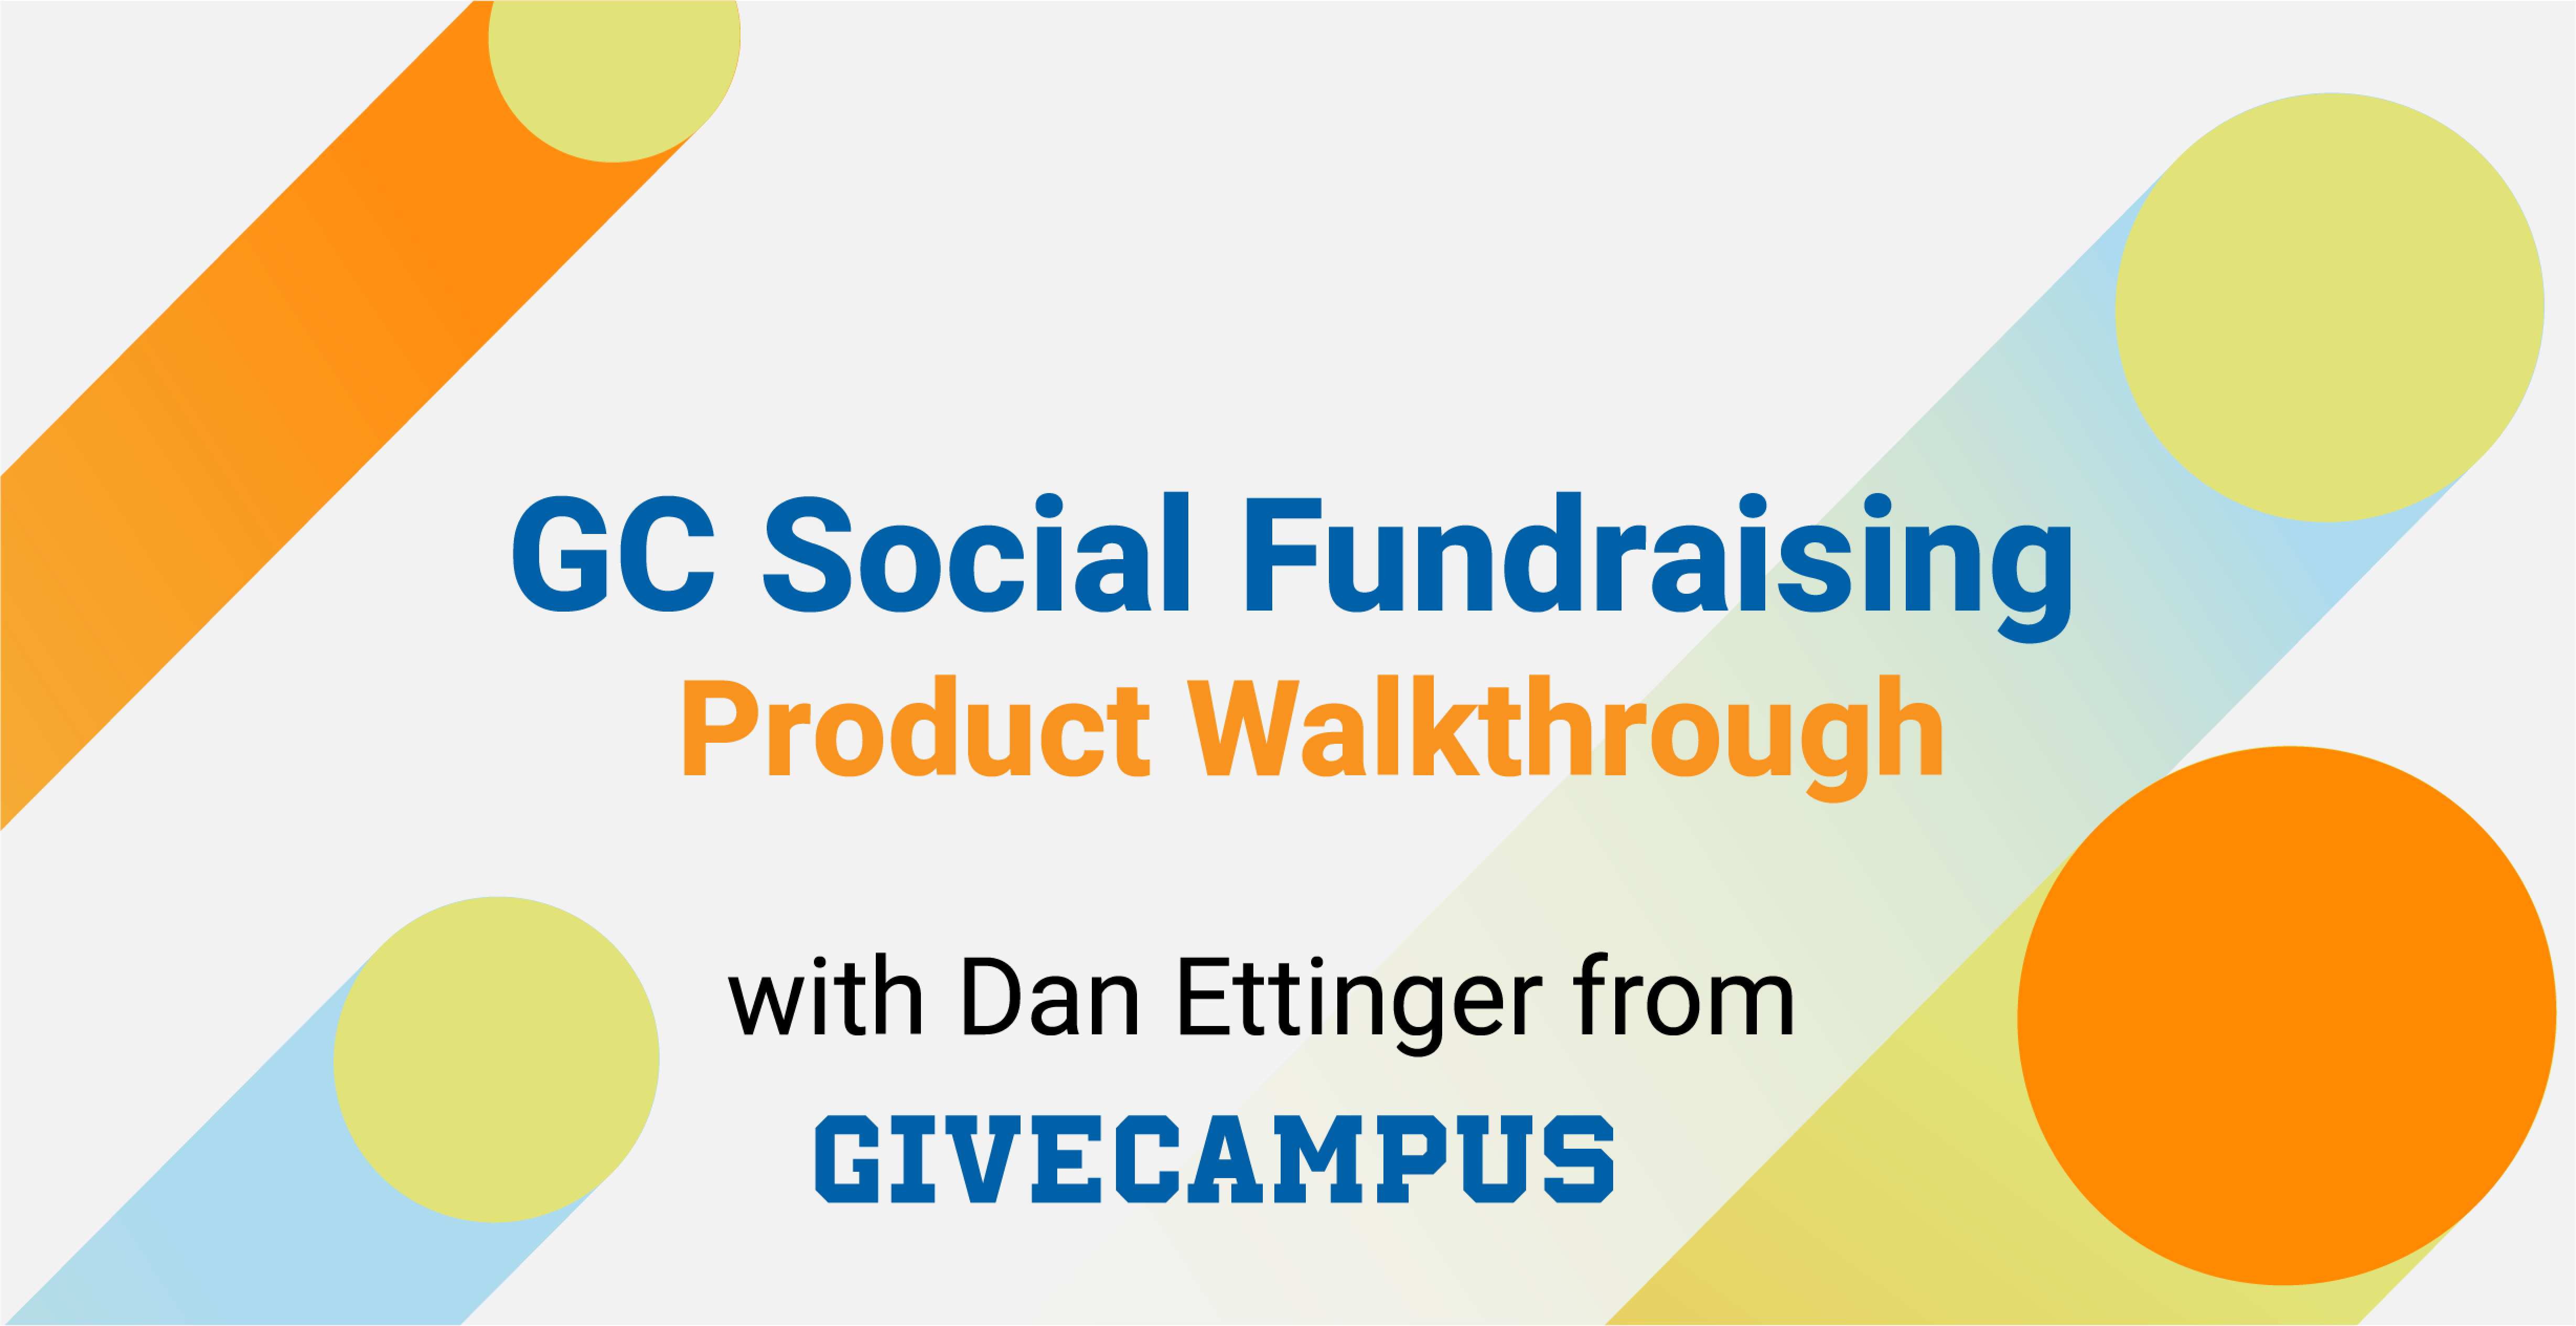 GC Social Fundraising Platform walkthrough video.